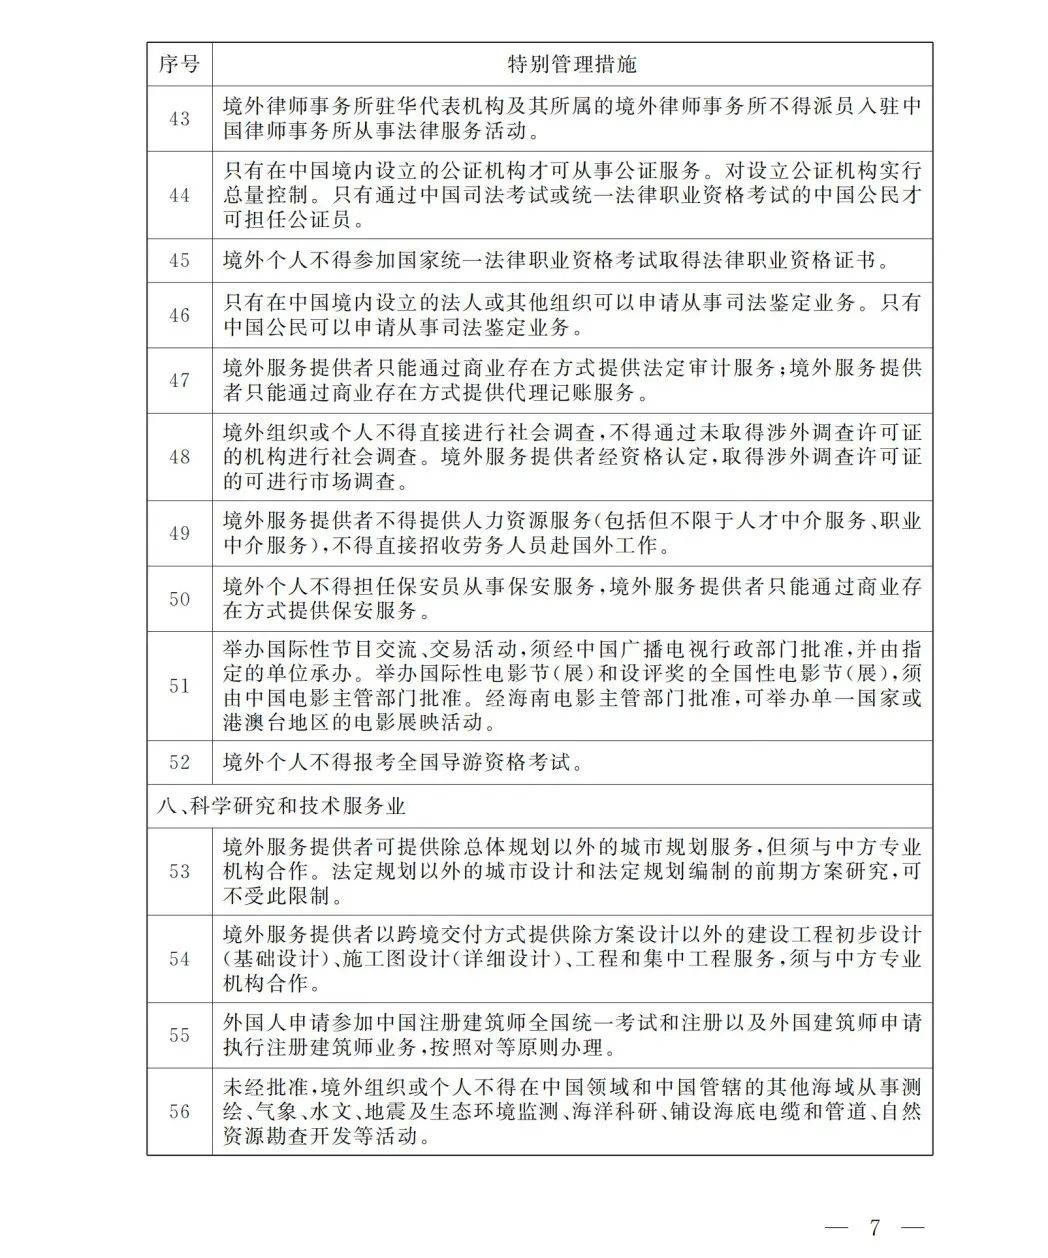 中国首张跨境服务贸易负面清单在海南自贸港施行引关注(跨境服务贸易)